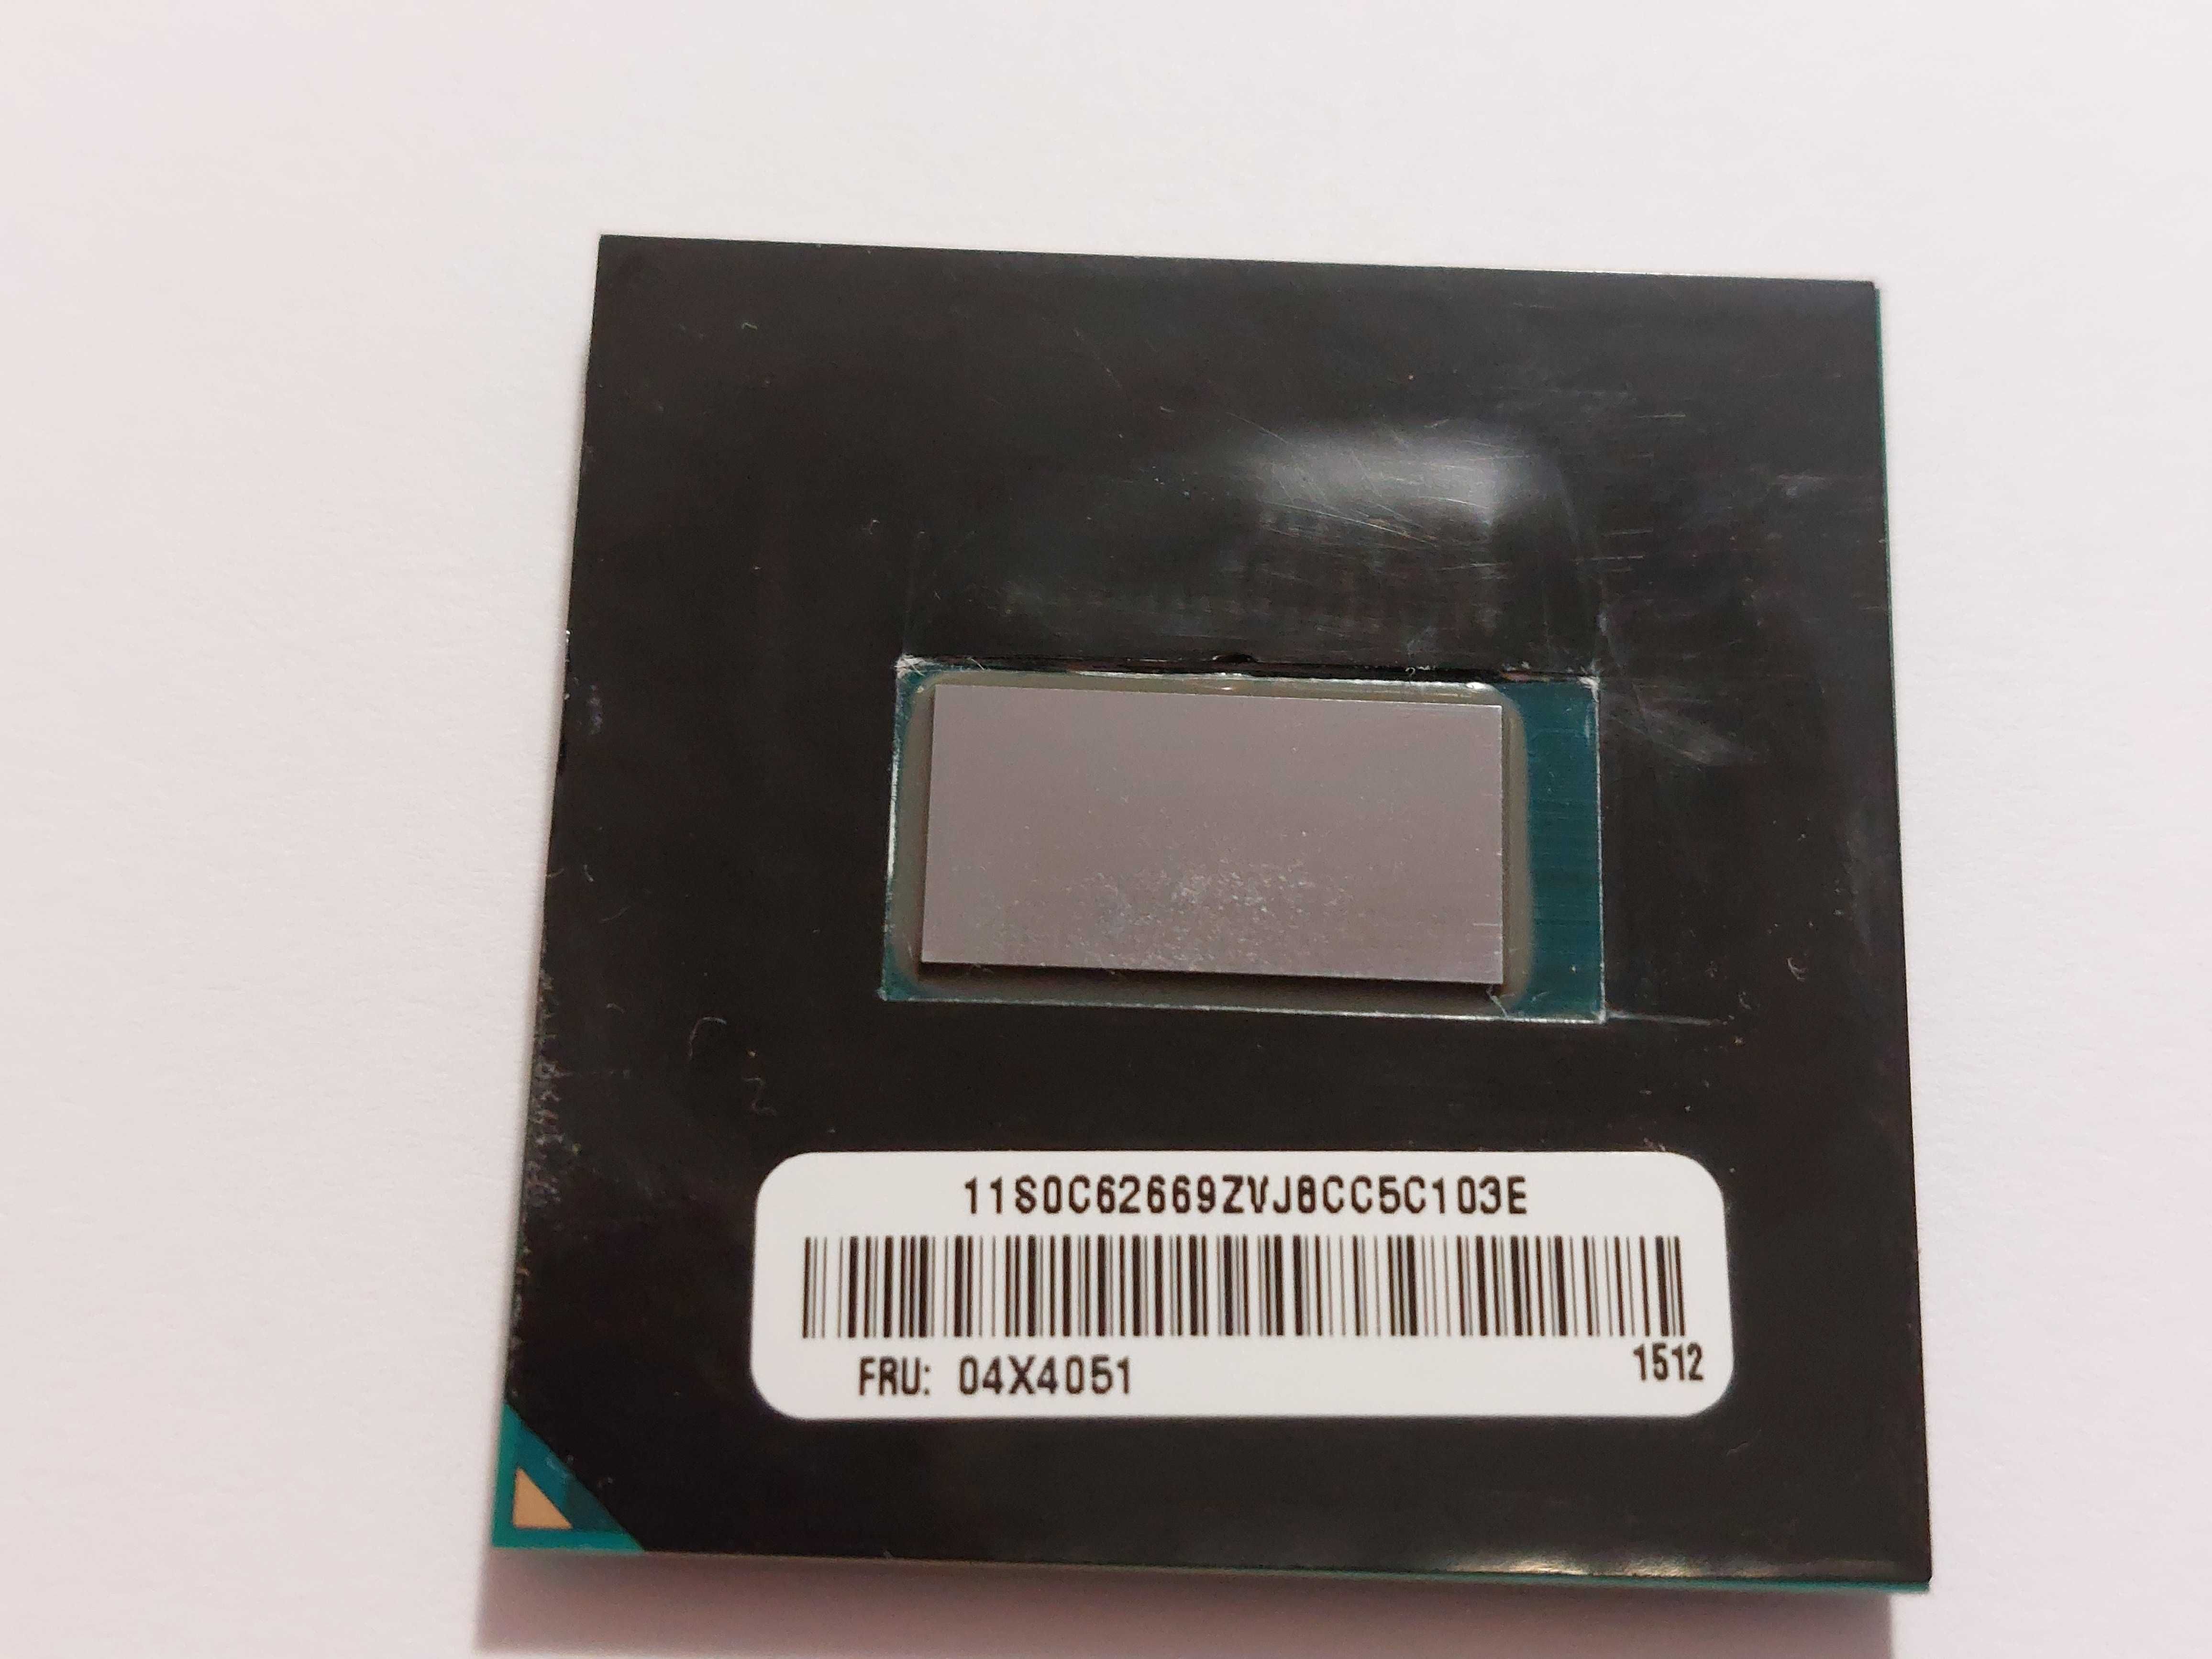 CPU Intel i5 4300m